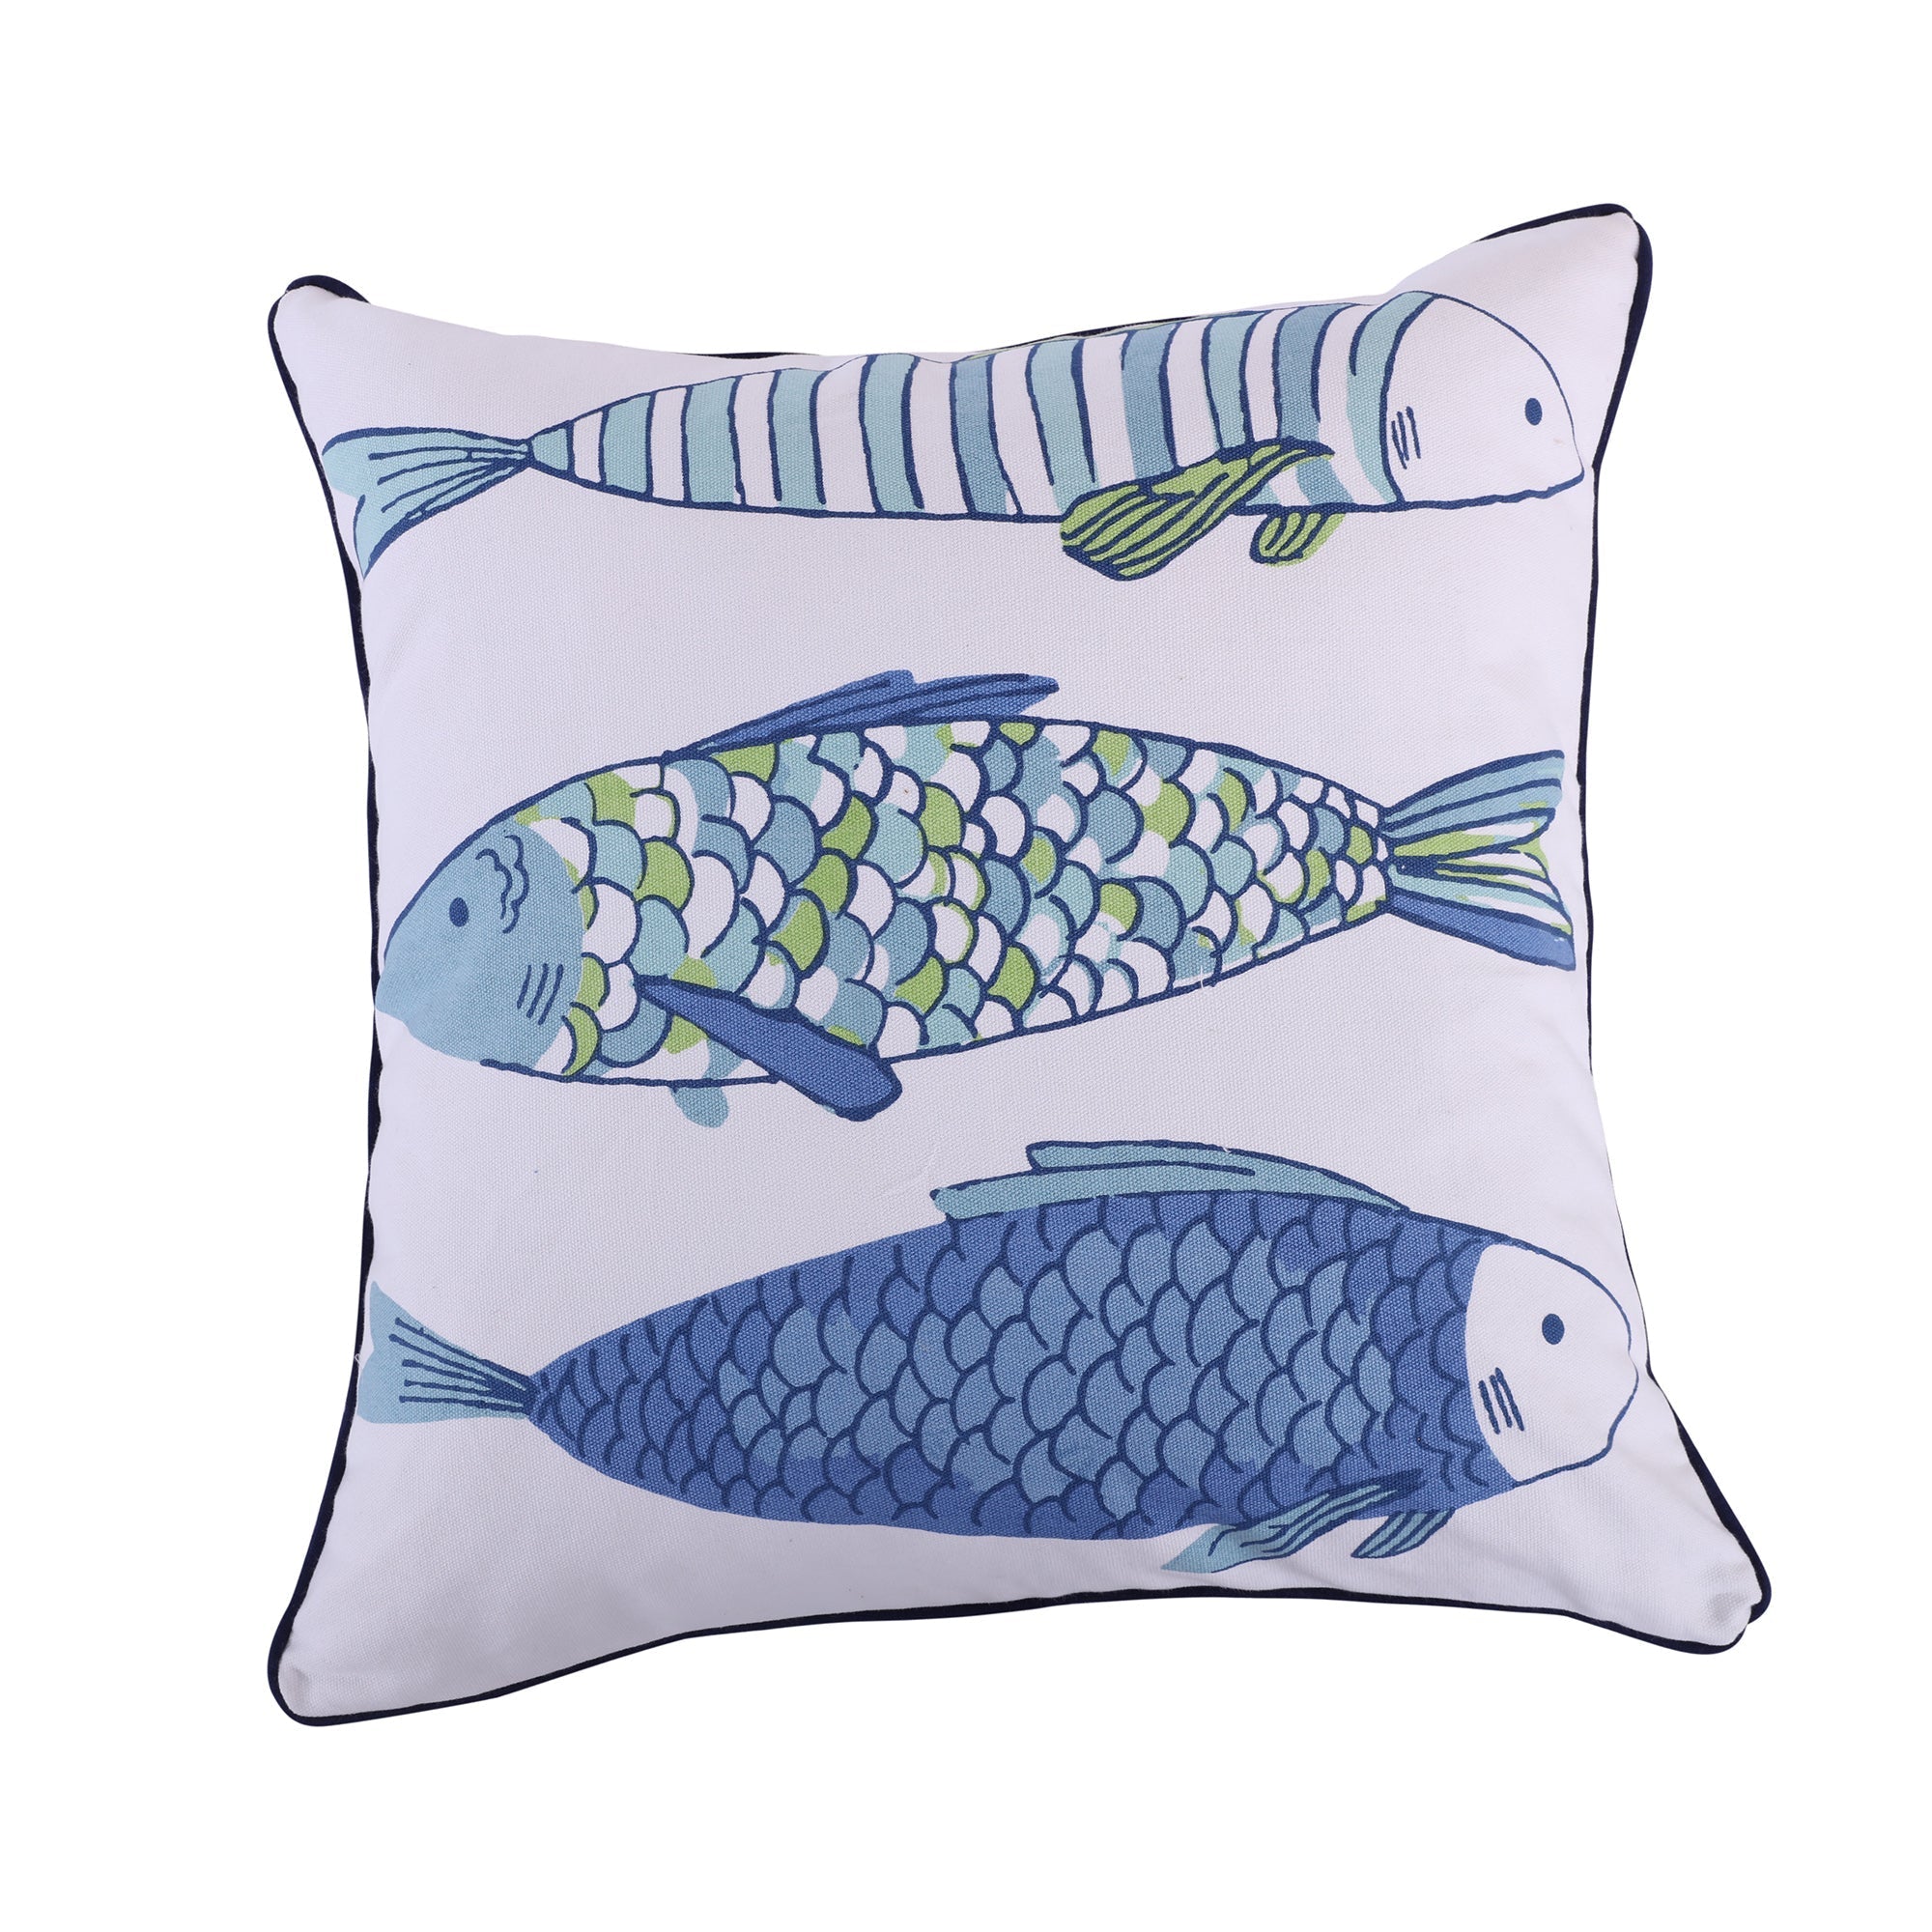 Catalina Fish Printed Fish pillow